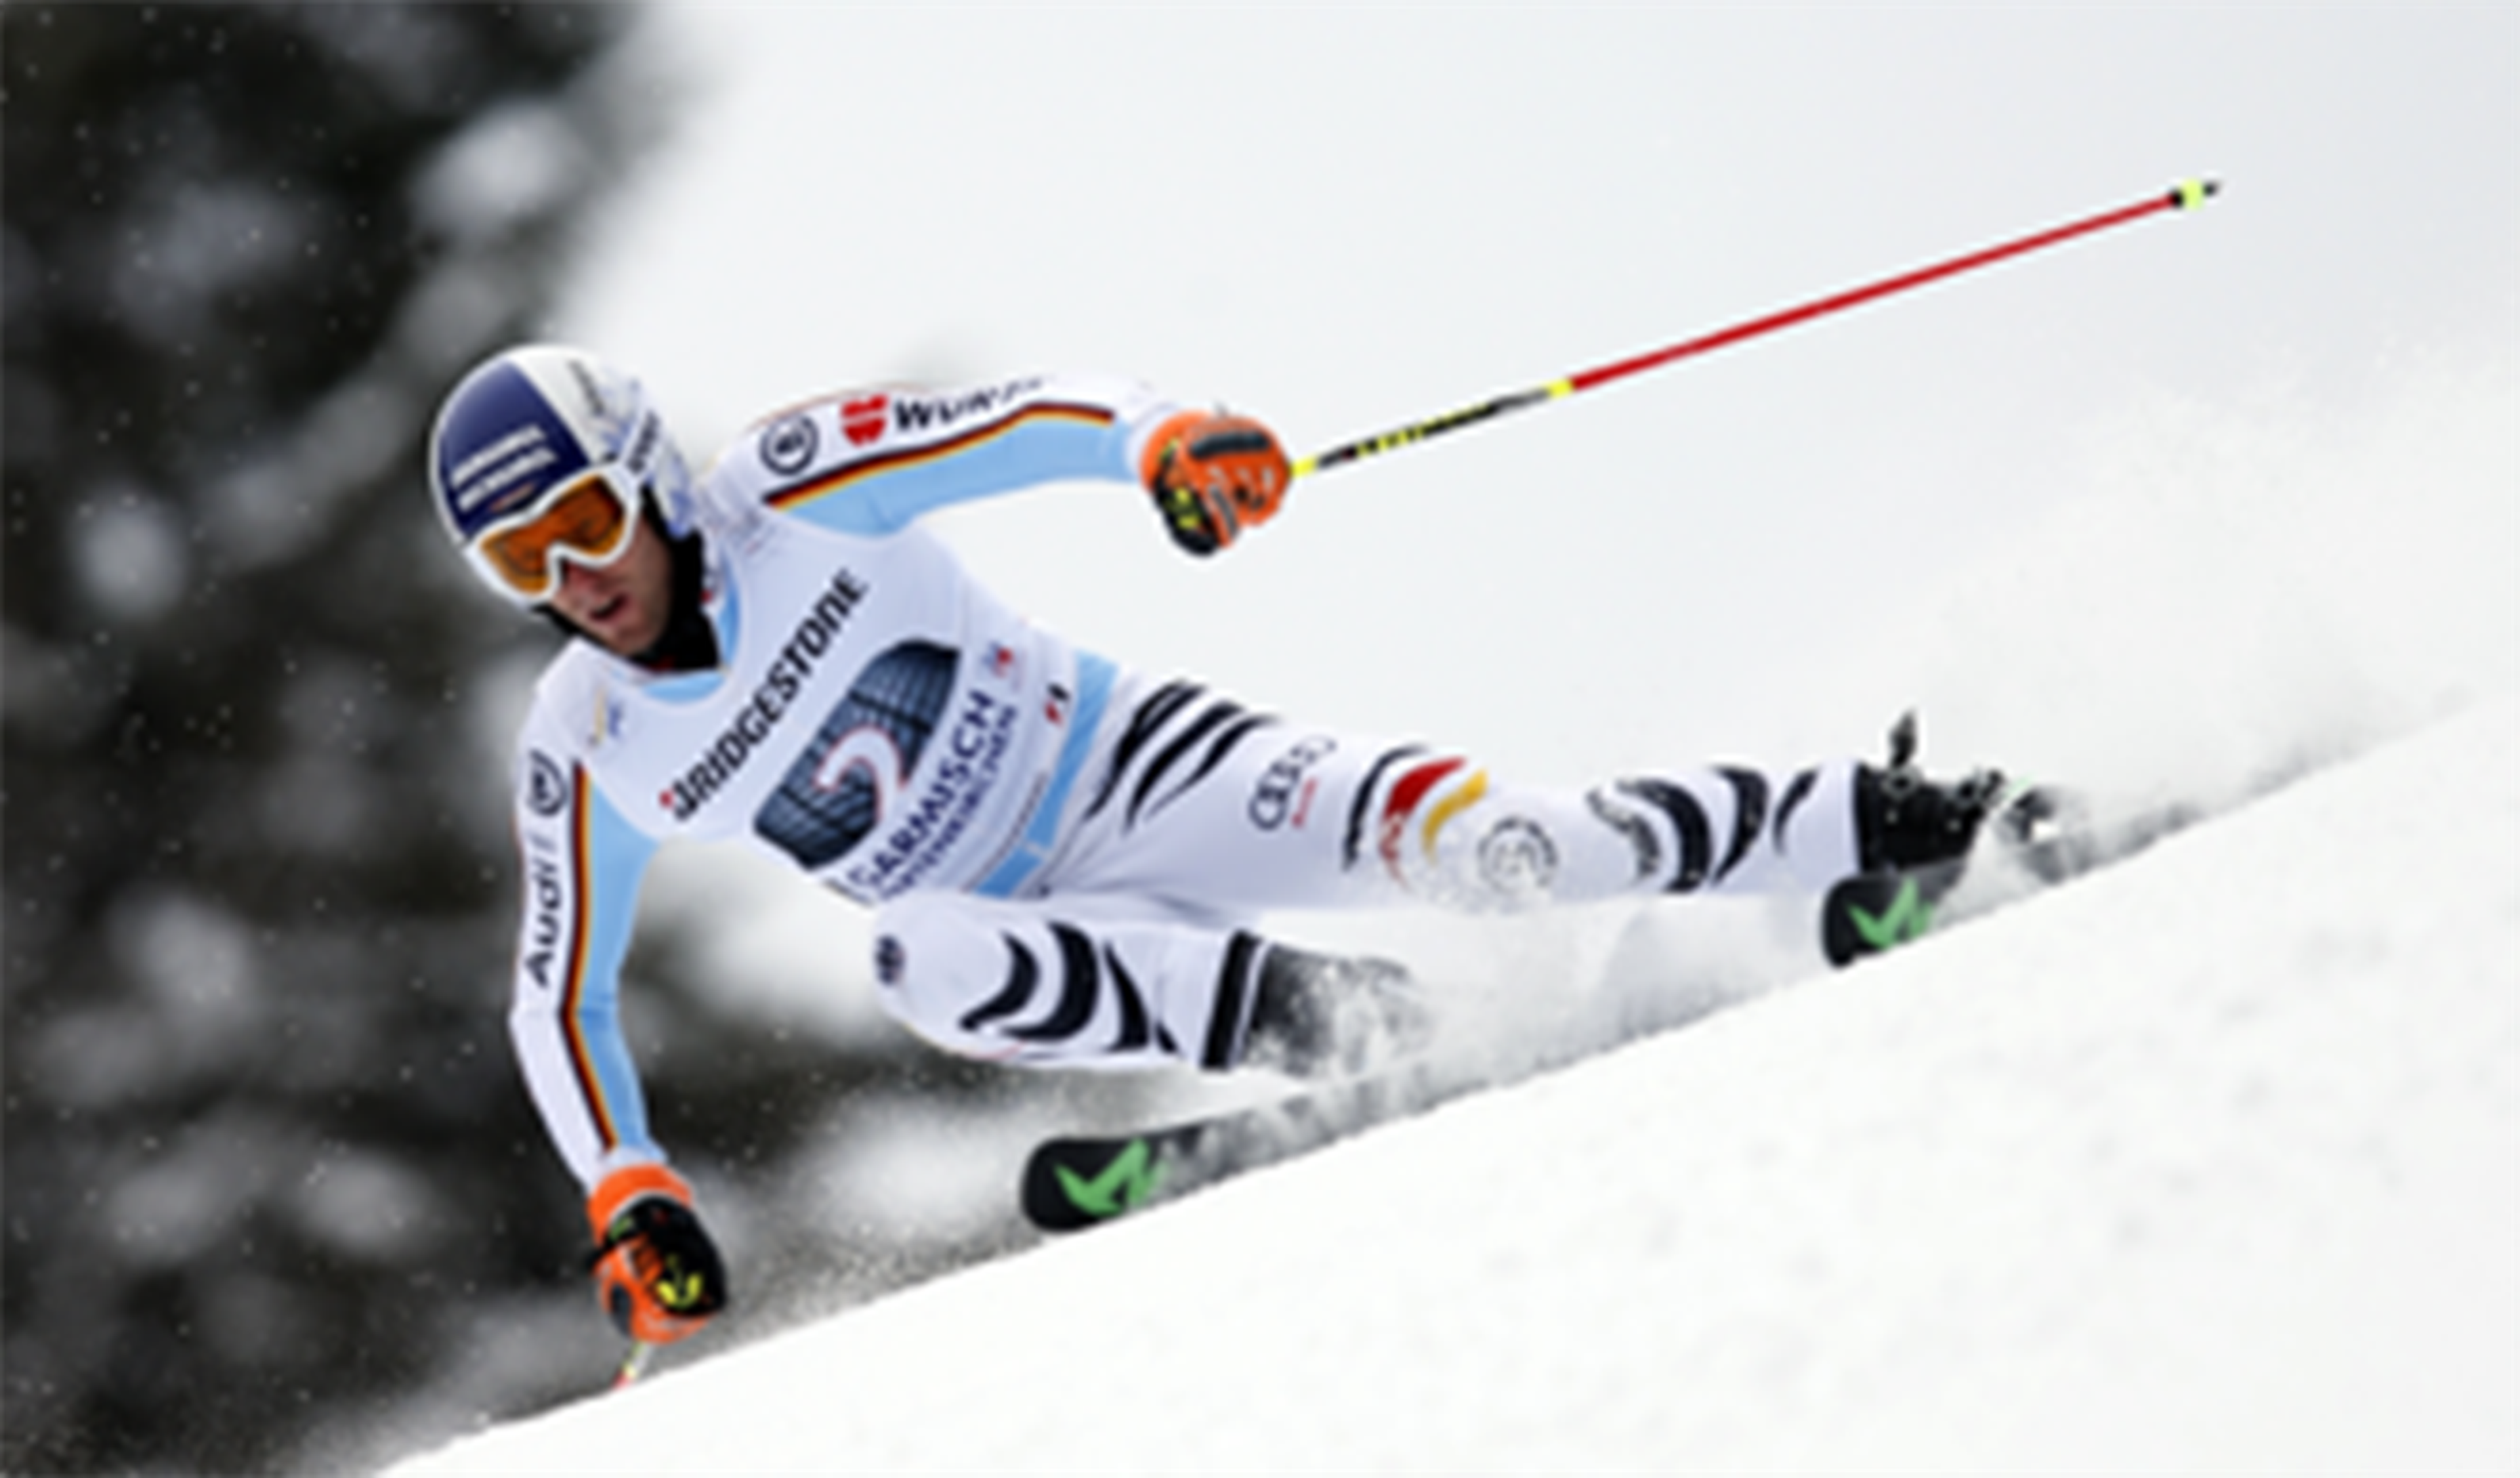 Bridgestone patrocina el Mundial de Esquí Alpino Audi FIS